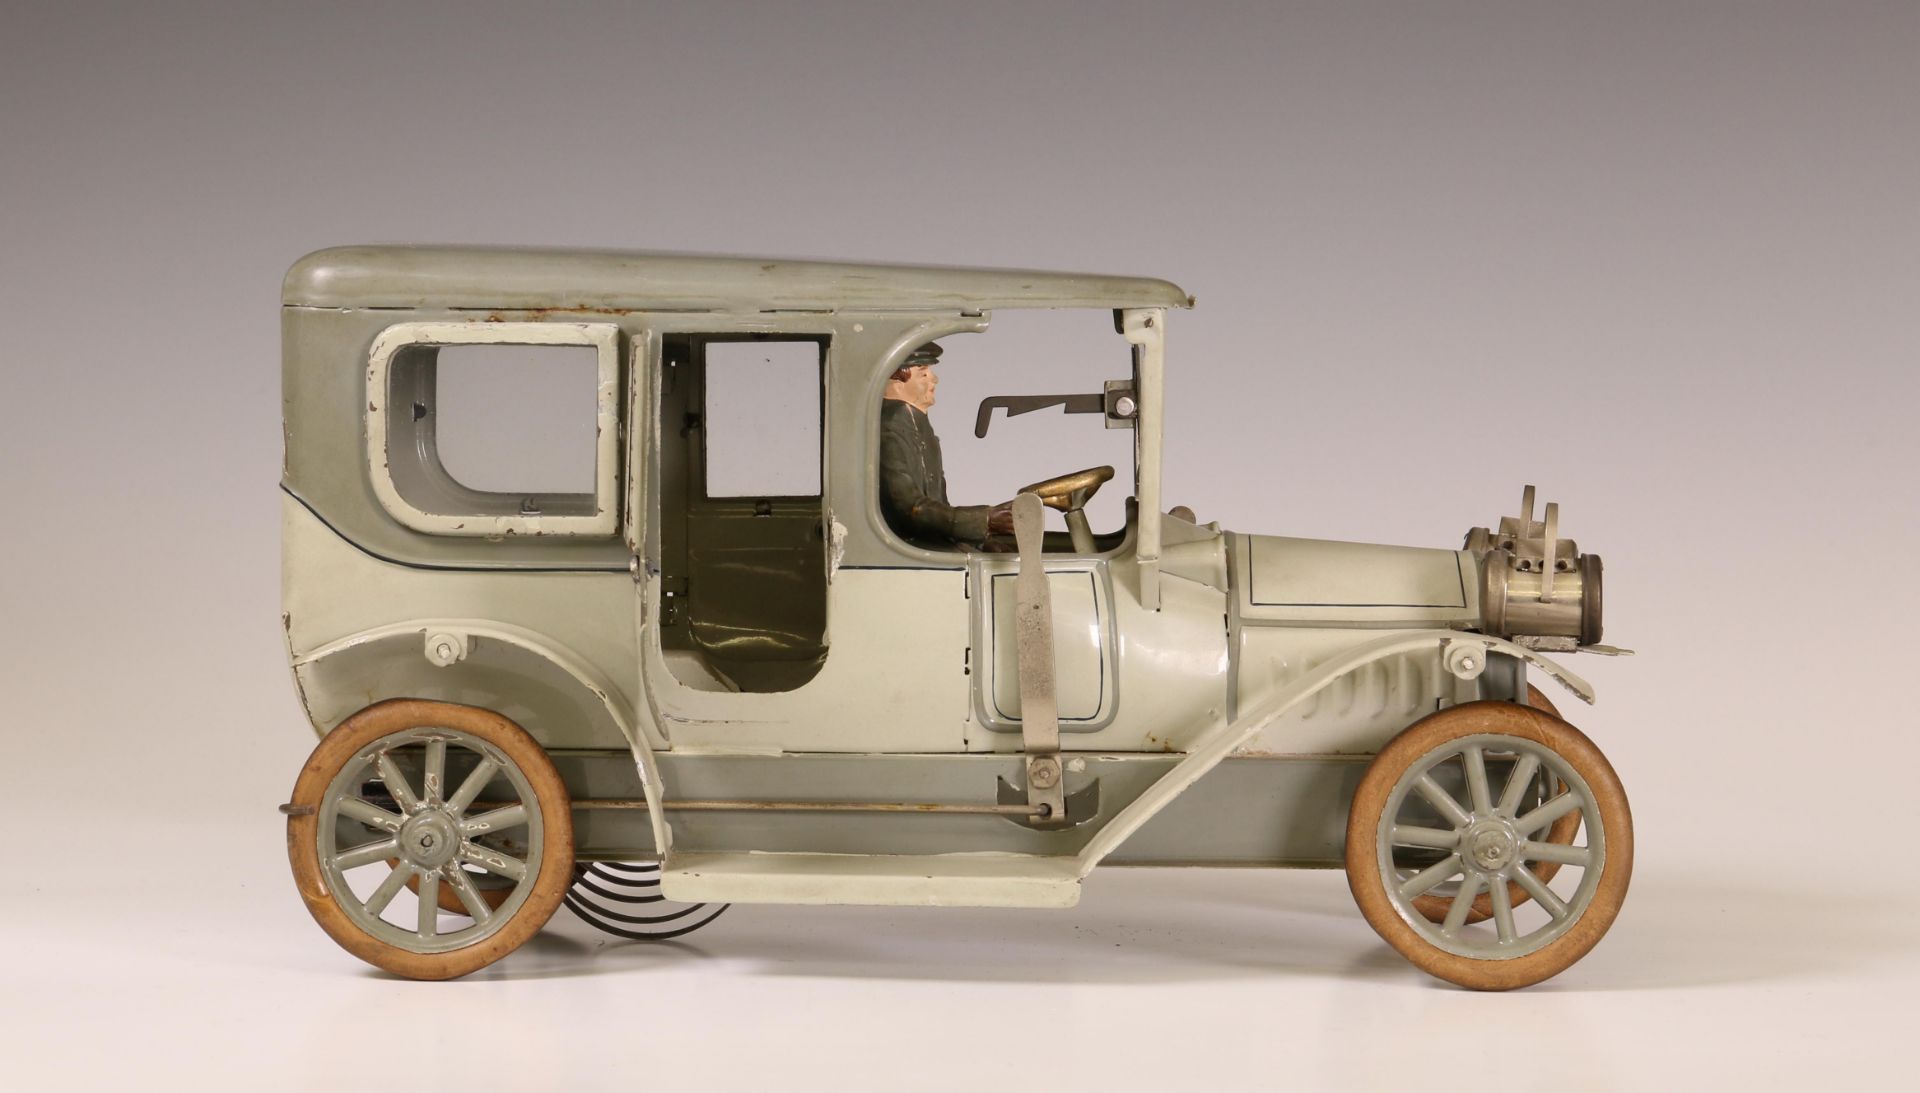 Duitsland, grijze limousine met chauffeur, mogelijk Karl Bub, ca. 1915. - Bild 4 aus 8